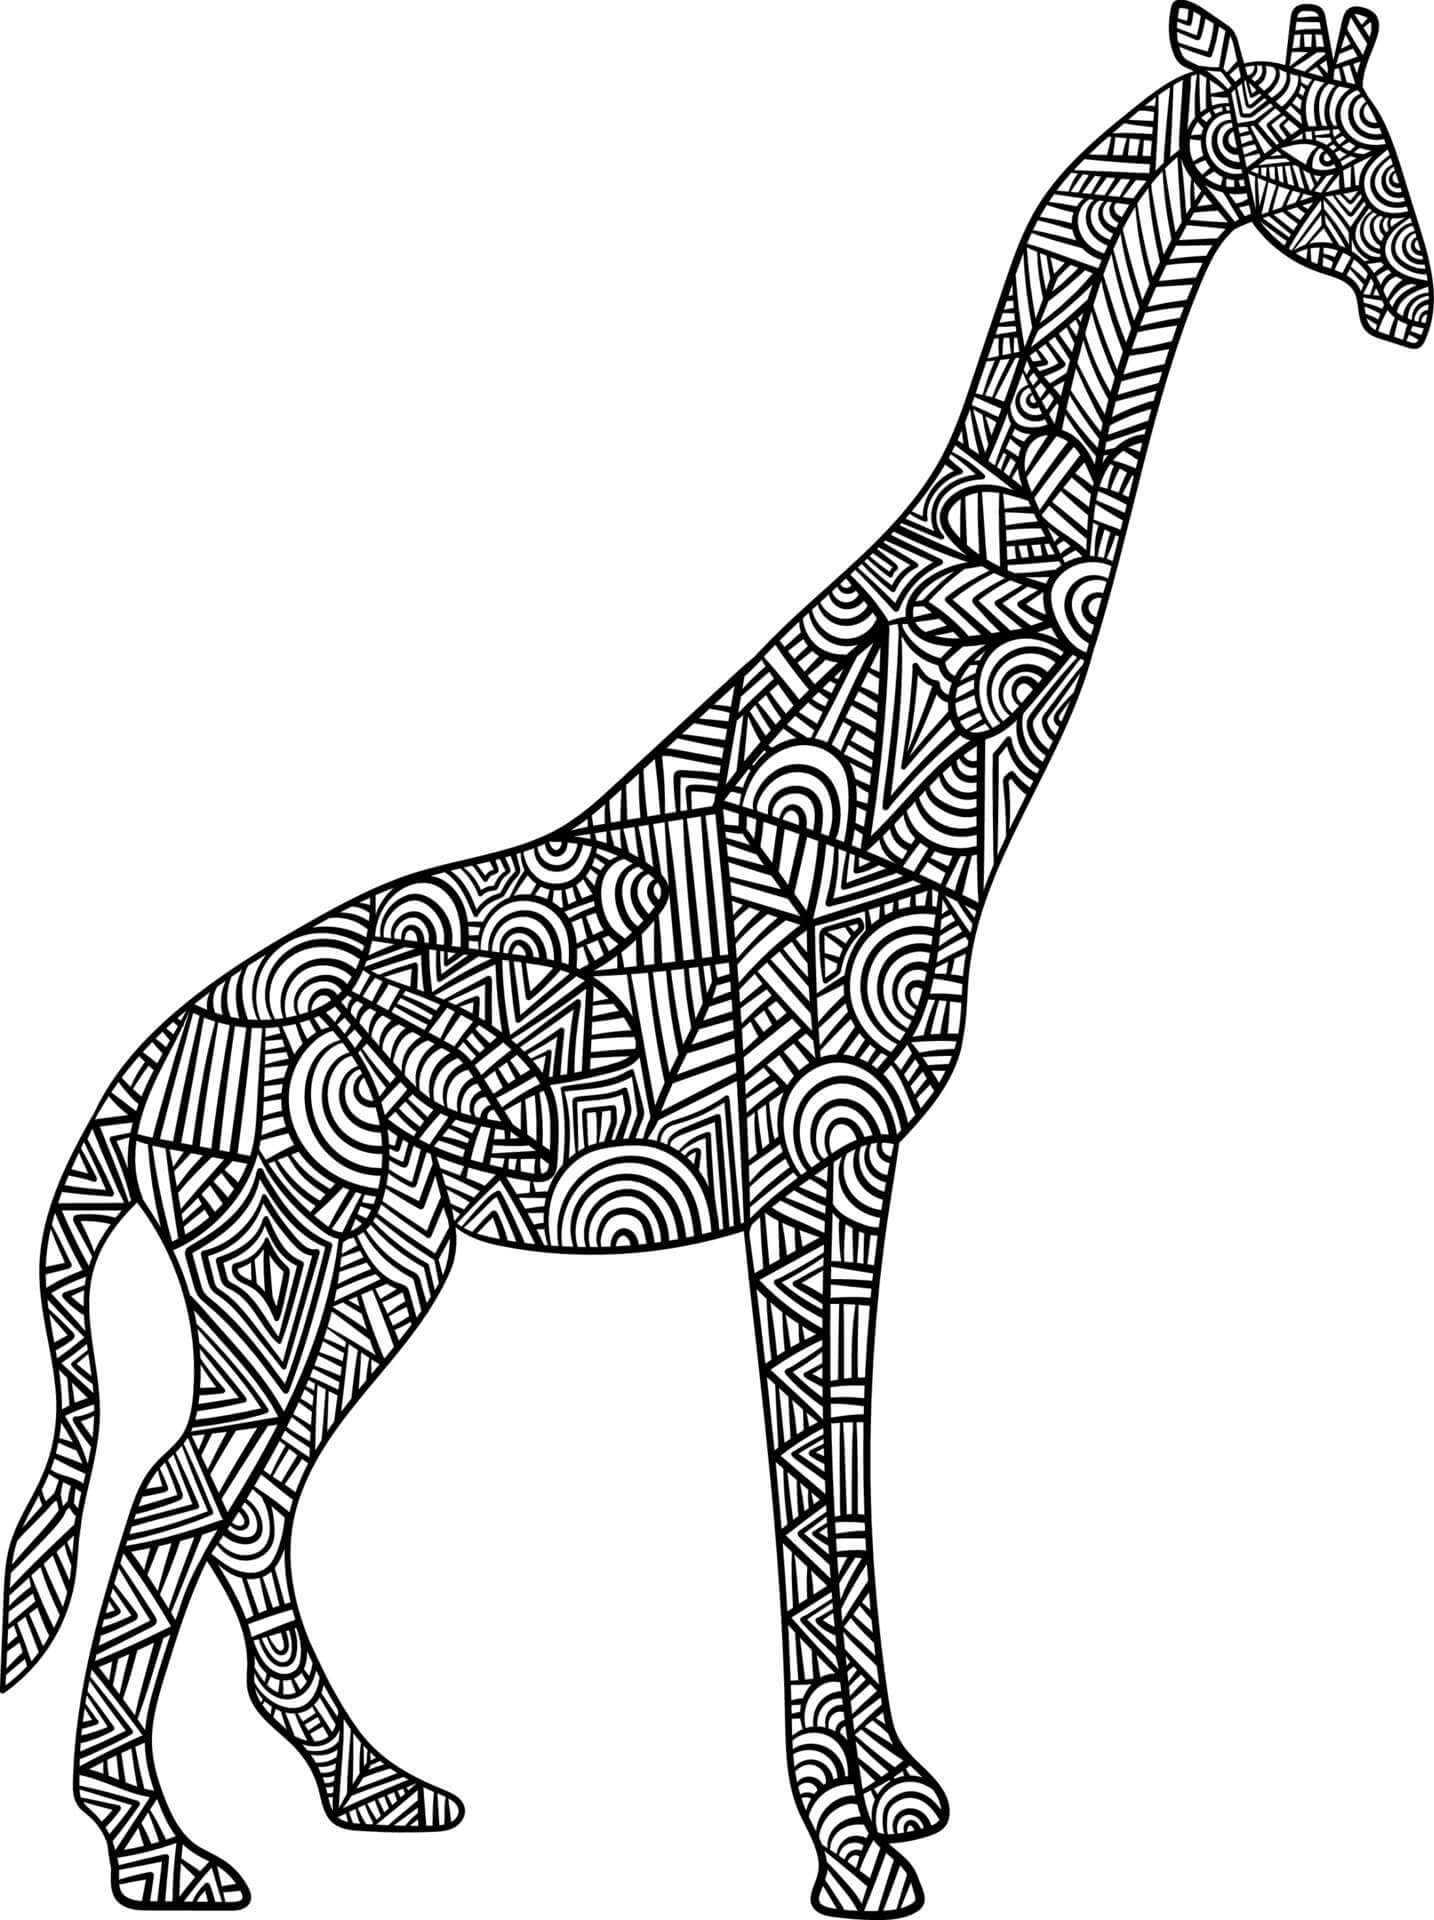 Mandala Giraffe Coloring Page - Sheet 1 Mandalas